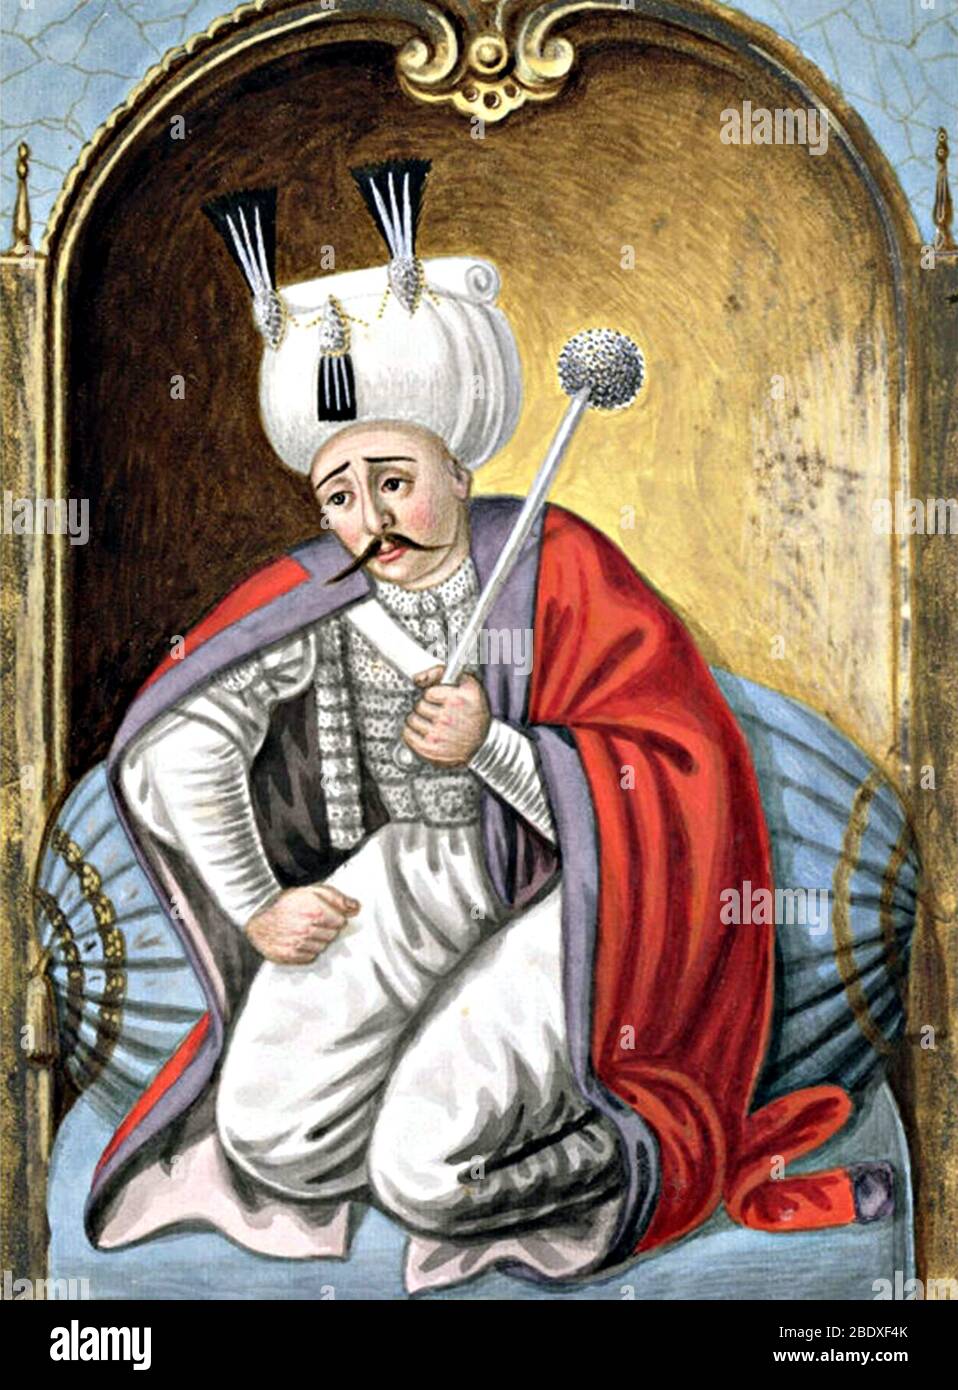 Selim i, Sultano ottomano Foto Stock